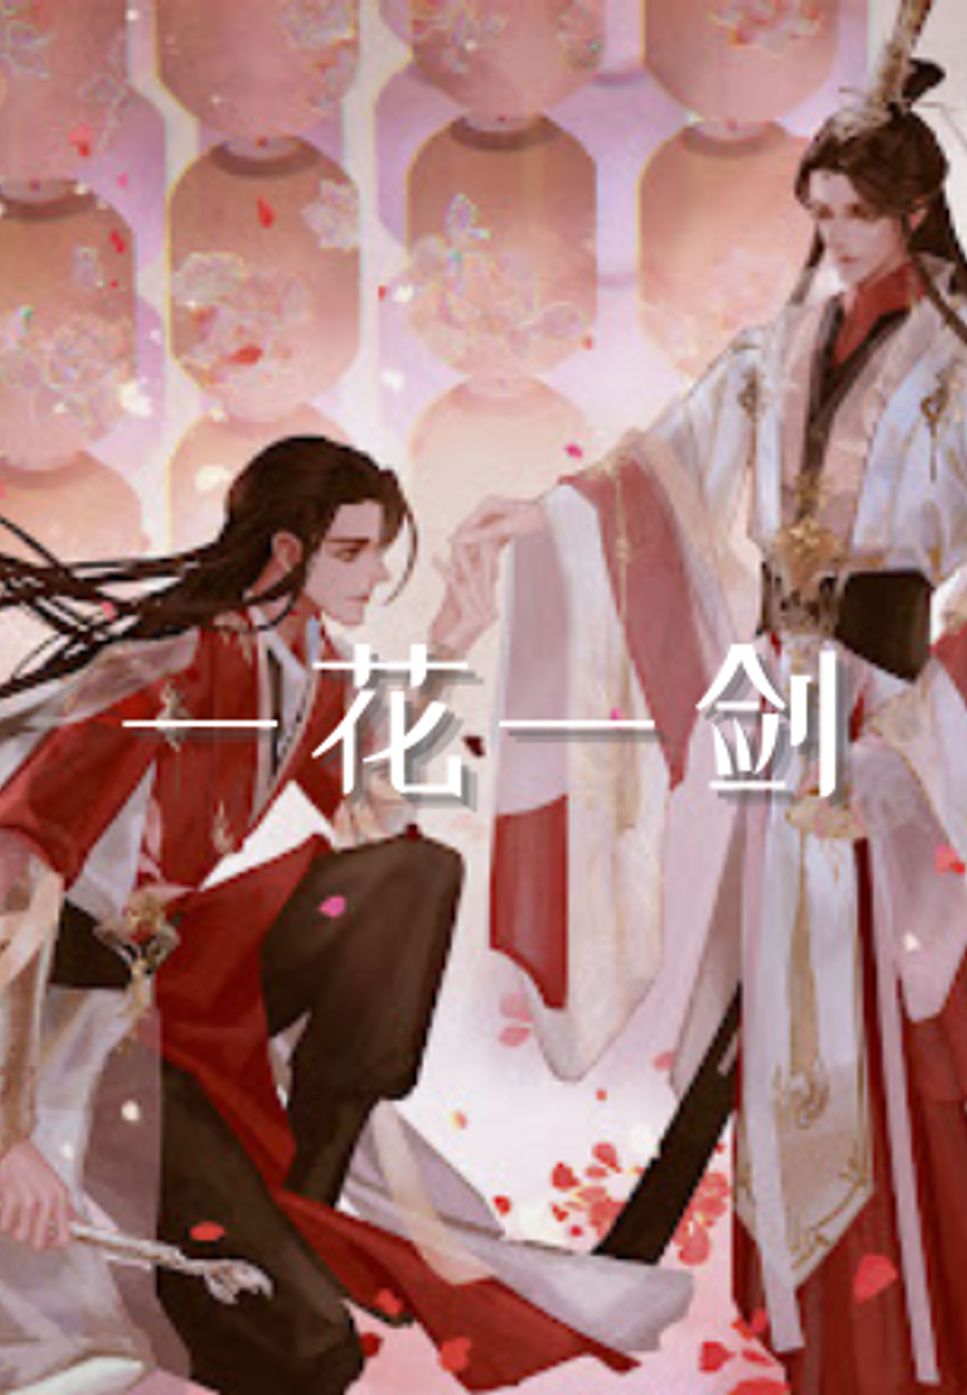 天官赐福 Heaven Official's Blessings - 一花一剑 One Flower One Sword by Zoe Wang